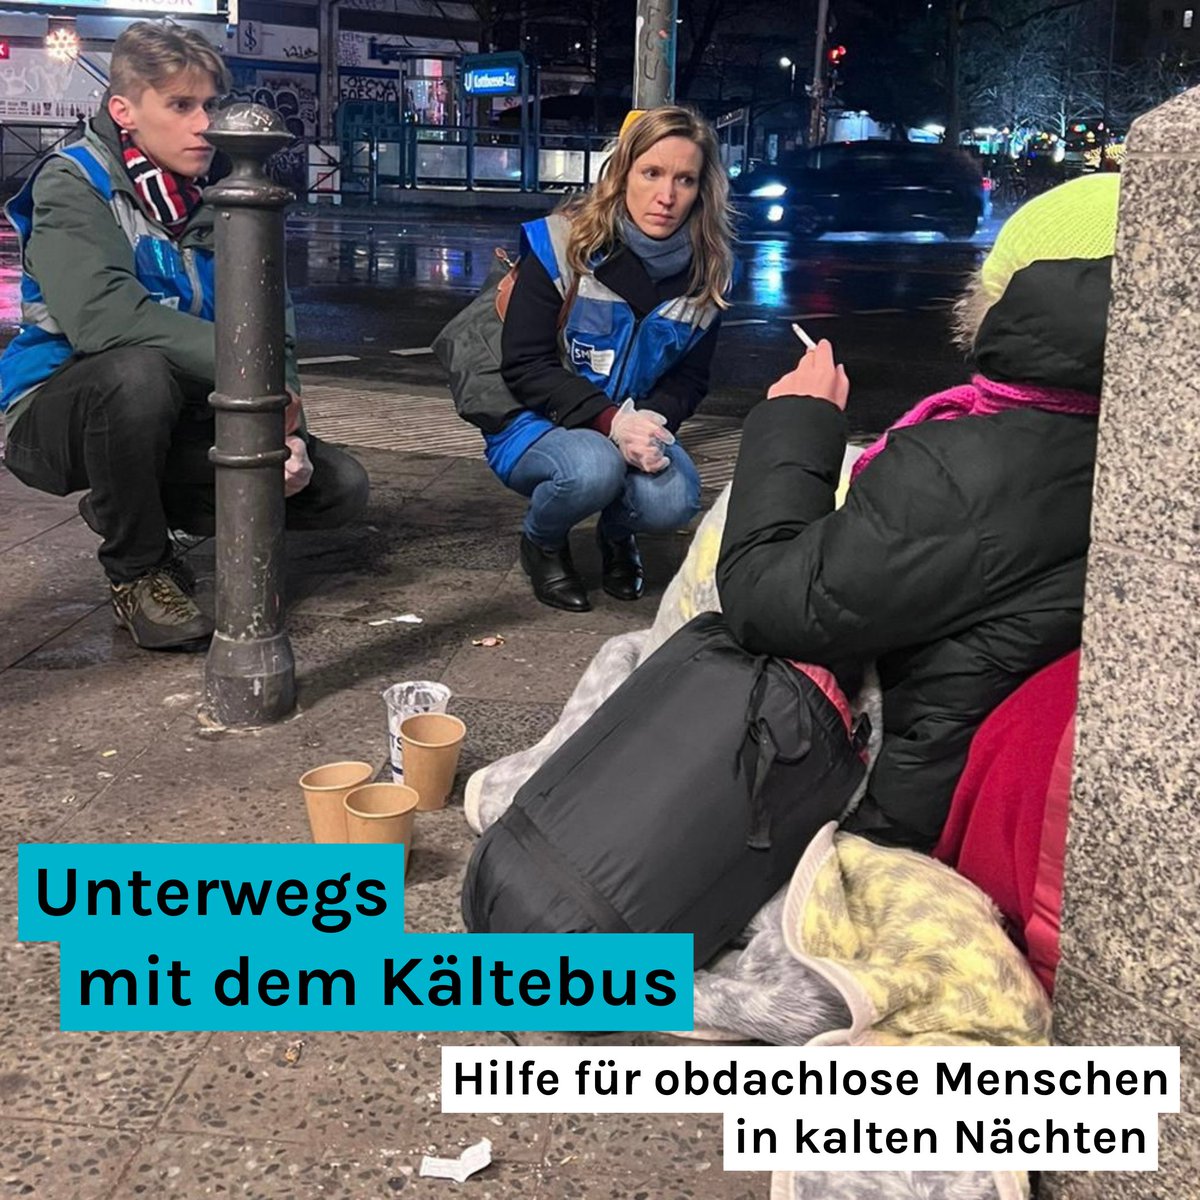 Für Obdachlose können kalte Temperaturen schnell zur Gefahr werden. Um ihnen zu helfen sind Ehrenamtliche der Berliner Stadtmission nachts mit Bussen unterwegs. Sie bieten warmes Essen & leisten Hilfestellung. Gestern war ich mit Heidi & Ruben auf Tour durch  Berlin.